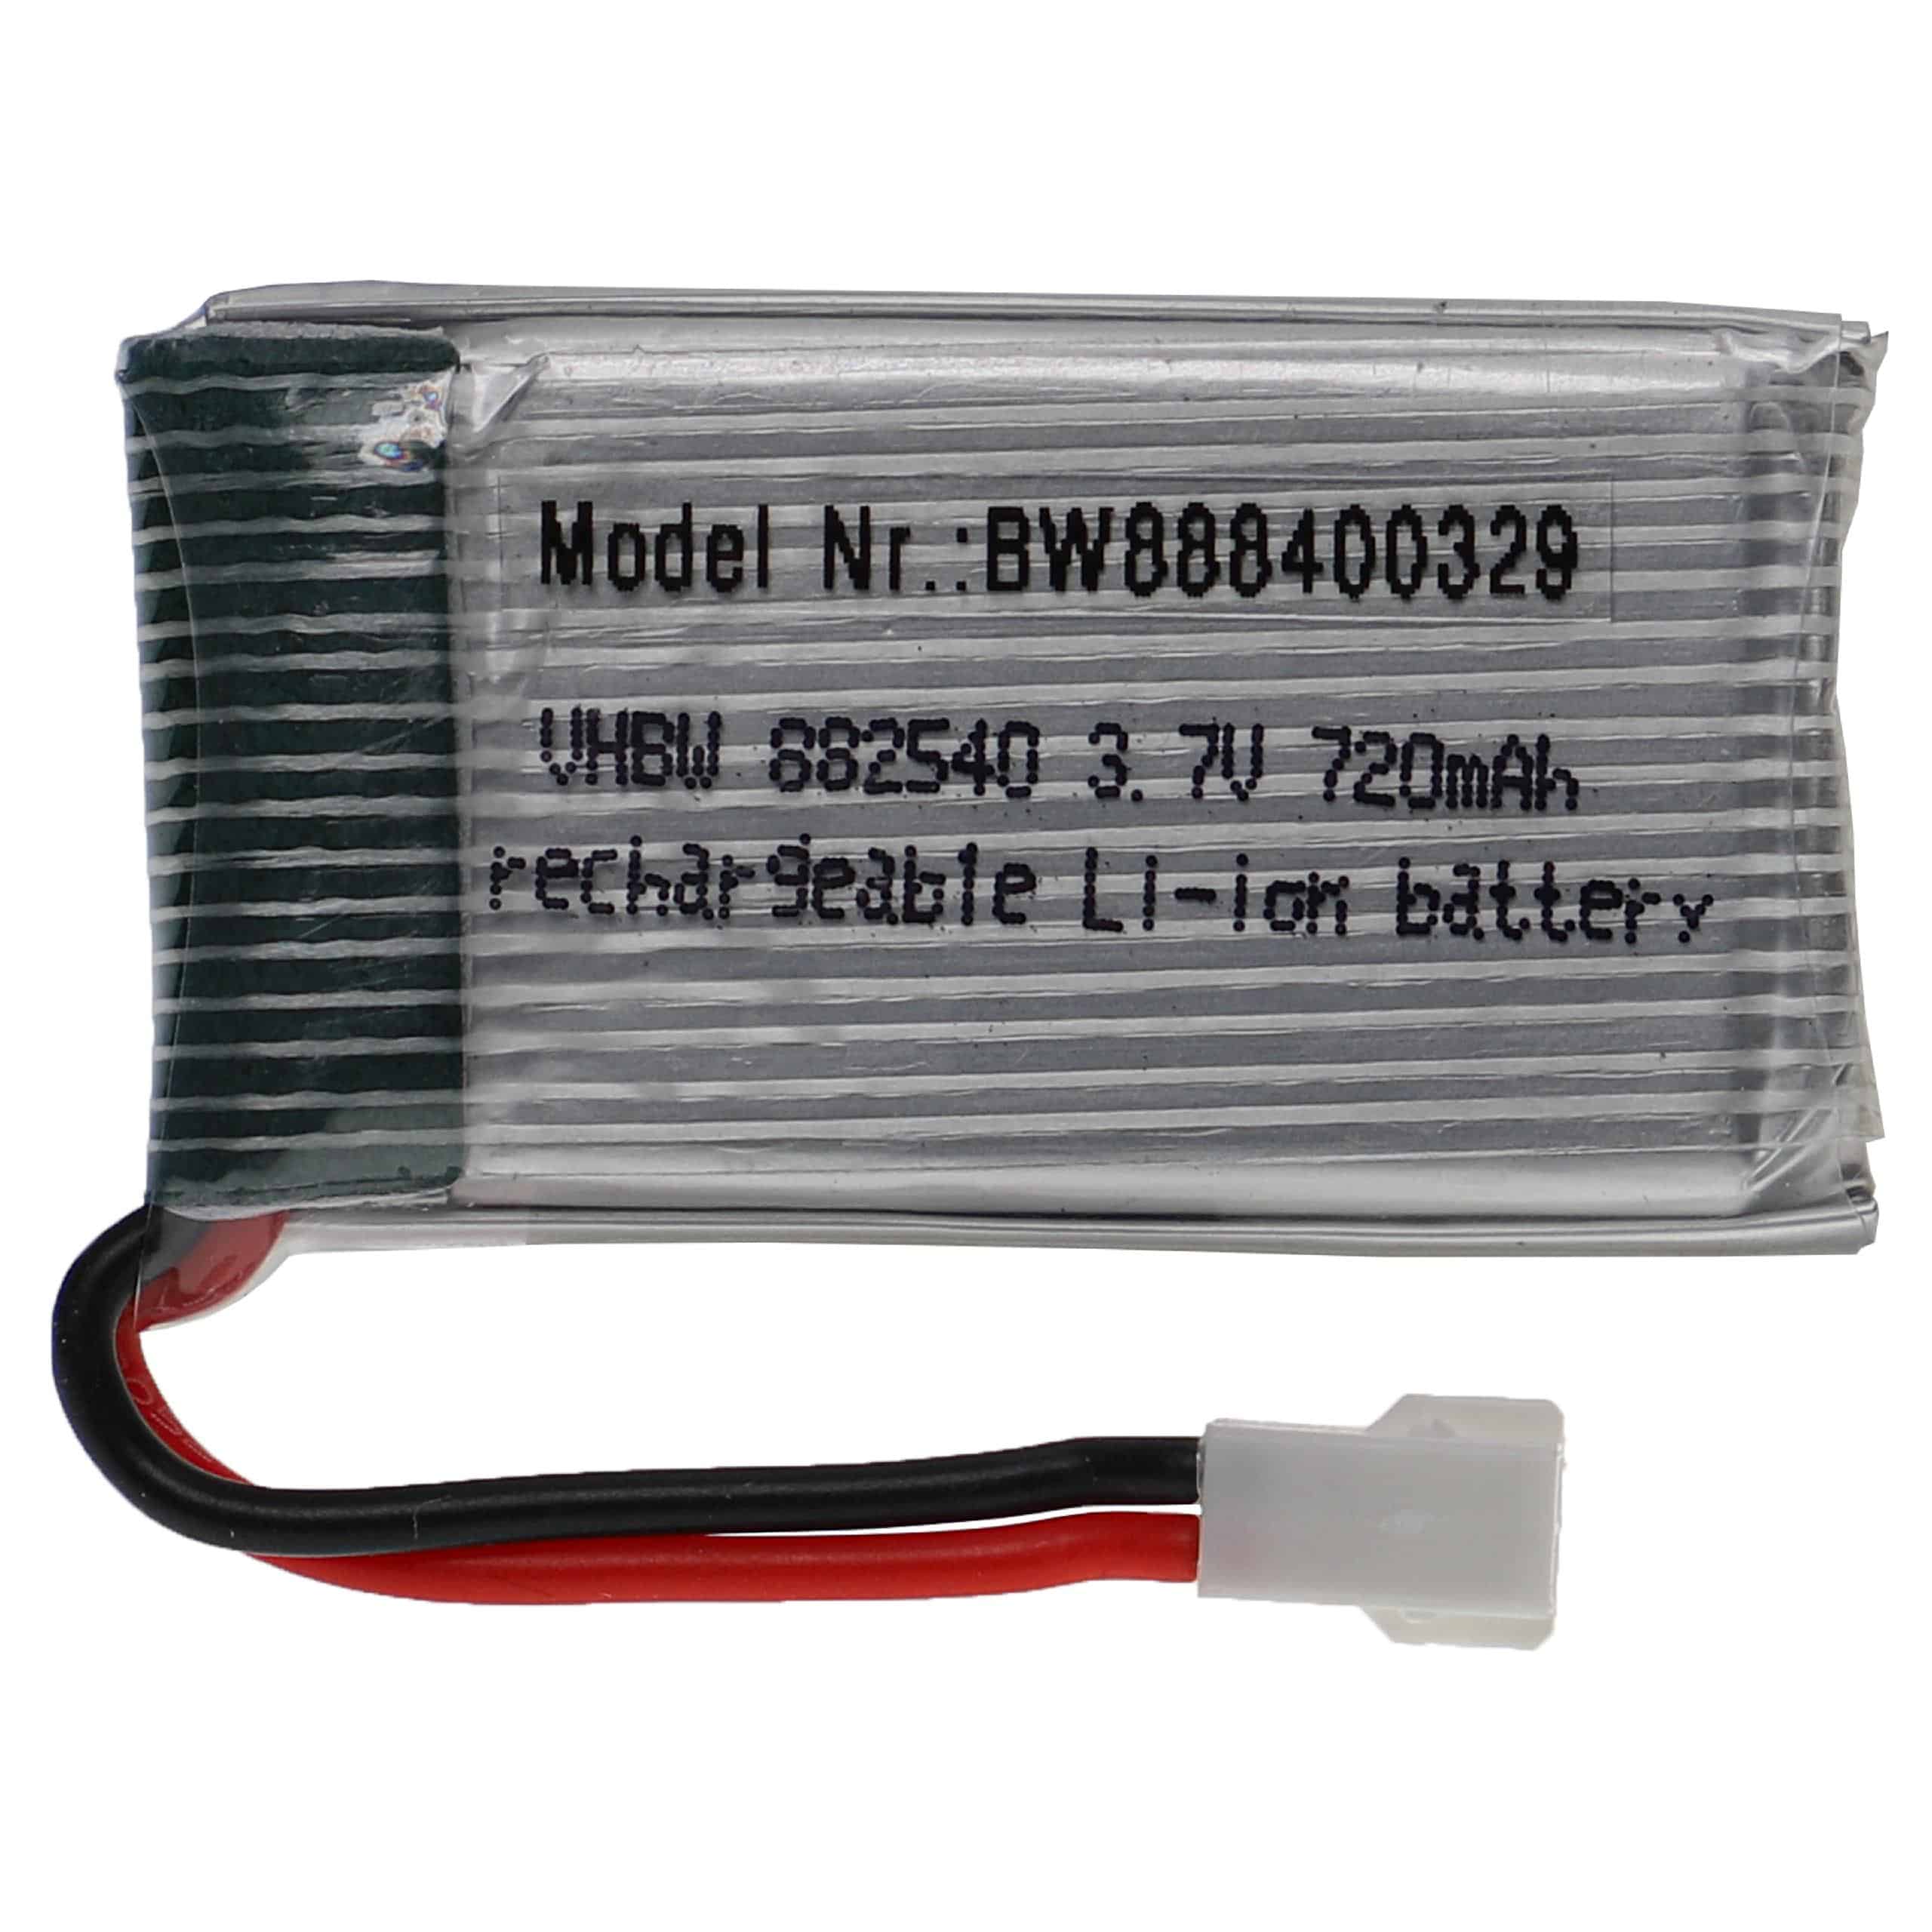 Akumulator do modeli zdalnie sterowanych RC - 720 mAh 3,7 V LiPo, XH 2.54 2P